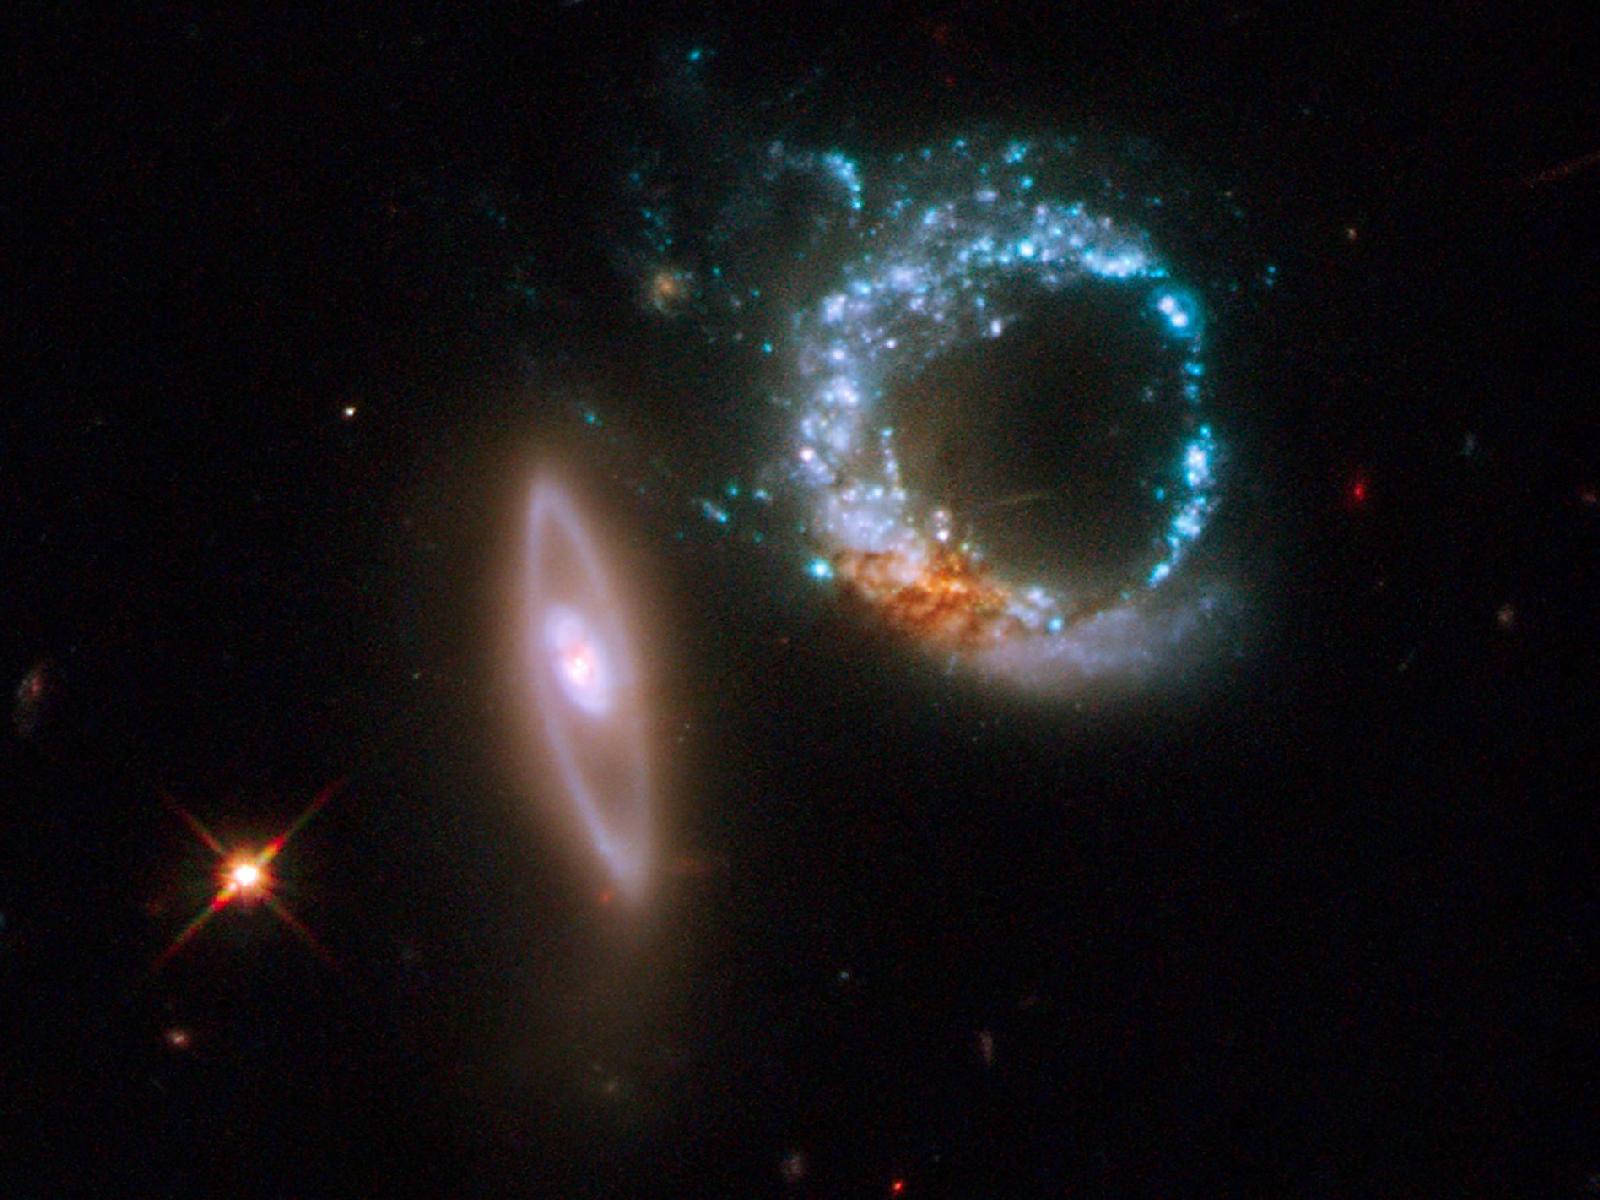 ARP 147: due galassie che interagiscono